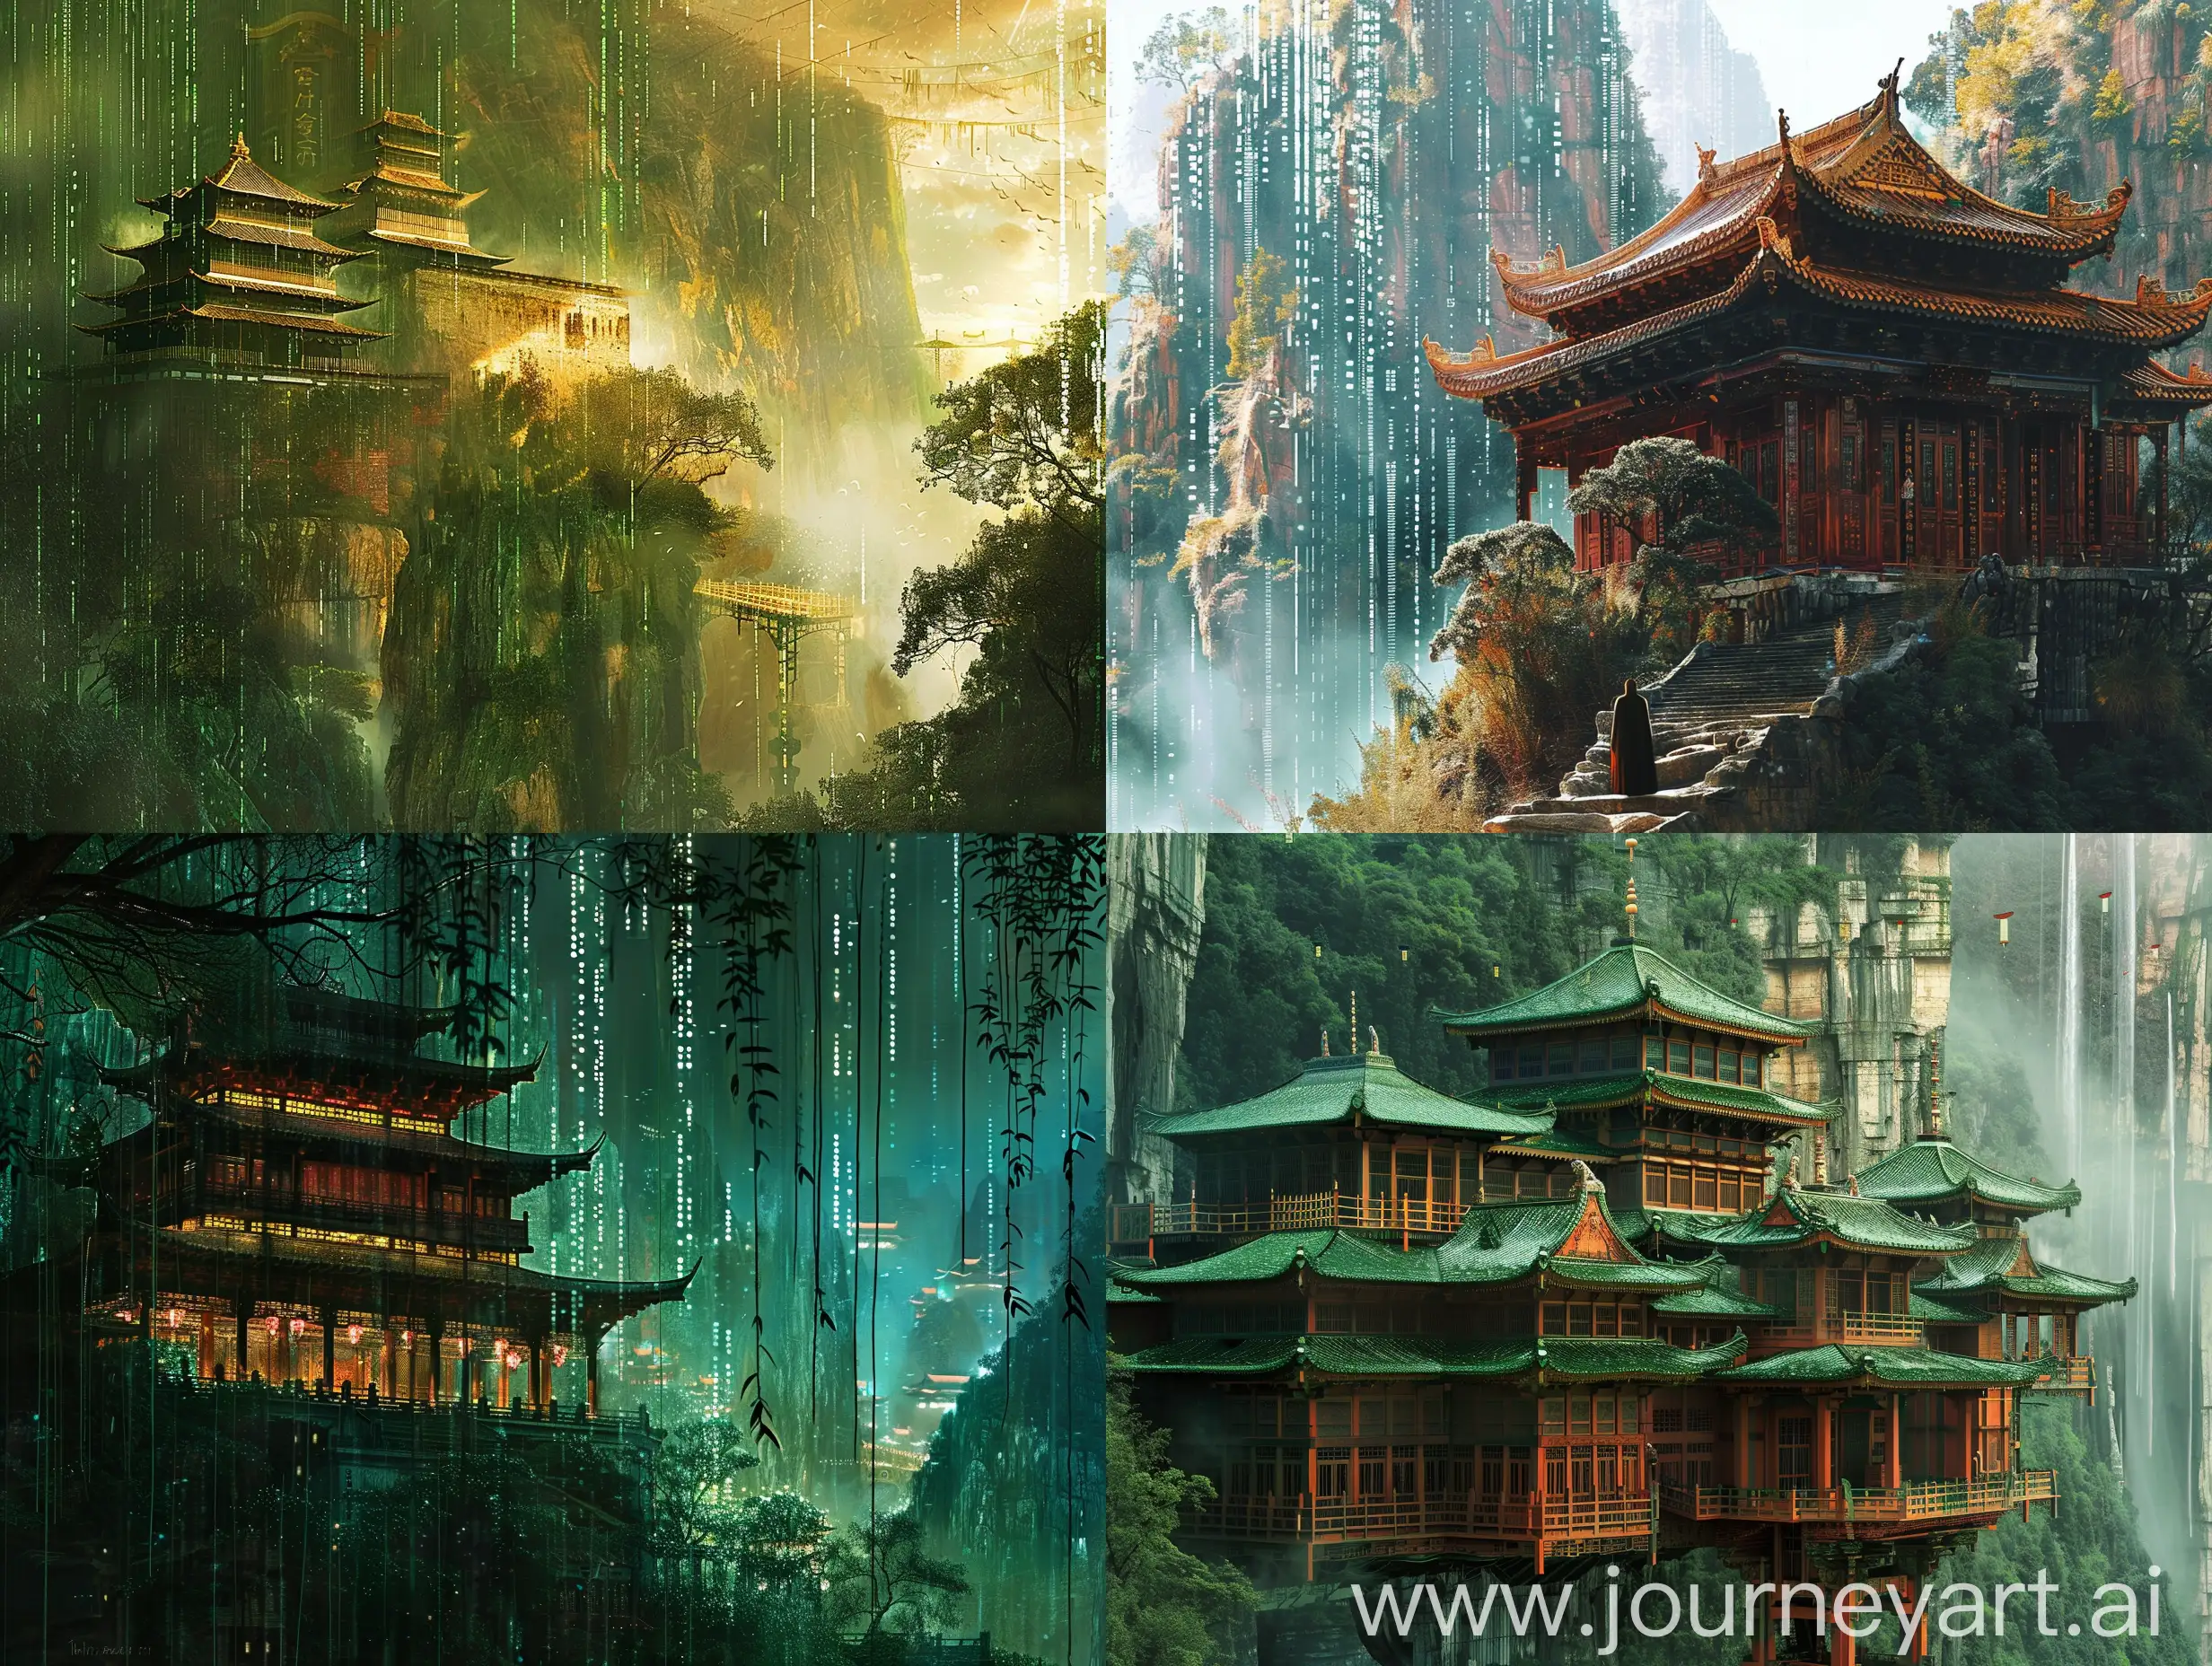 Serene-ShangriLa-Realistic-Painting-with-MatrixLike-Background